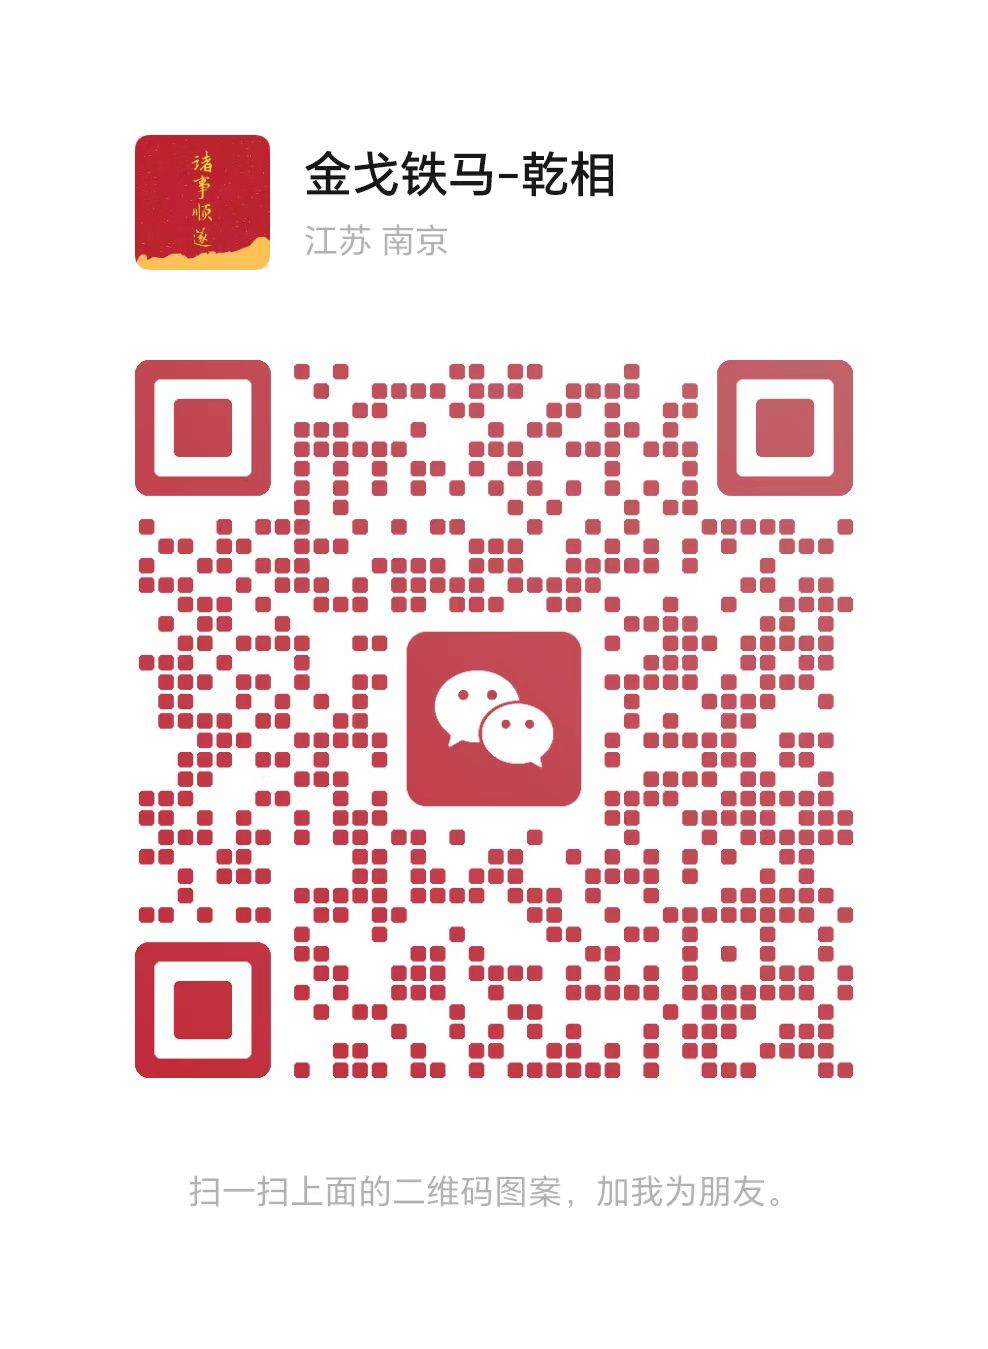 WeChat follow